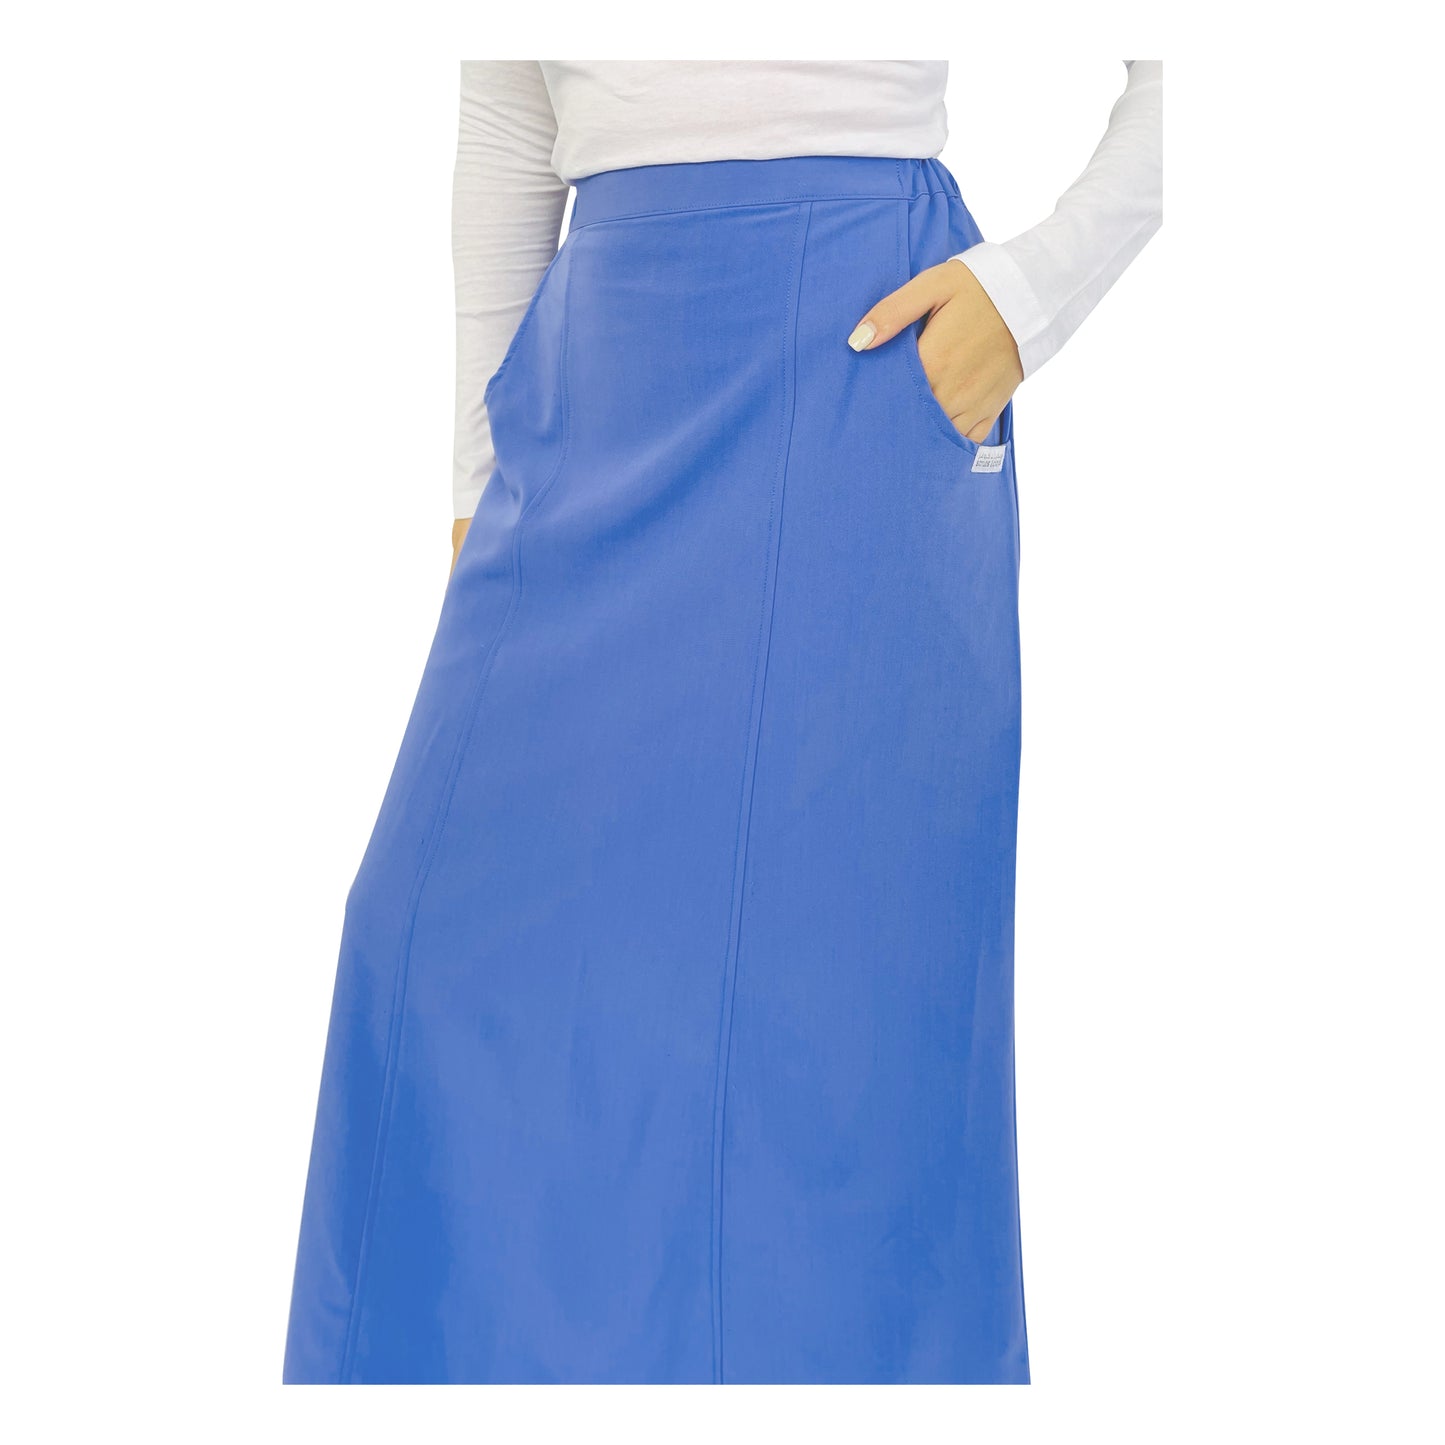 Women's Long Skirt SK700